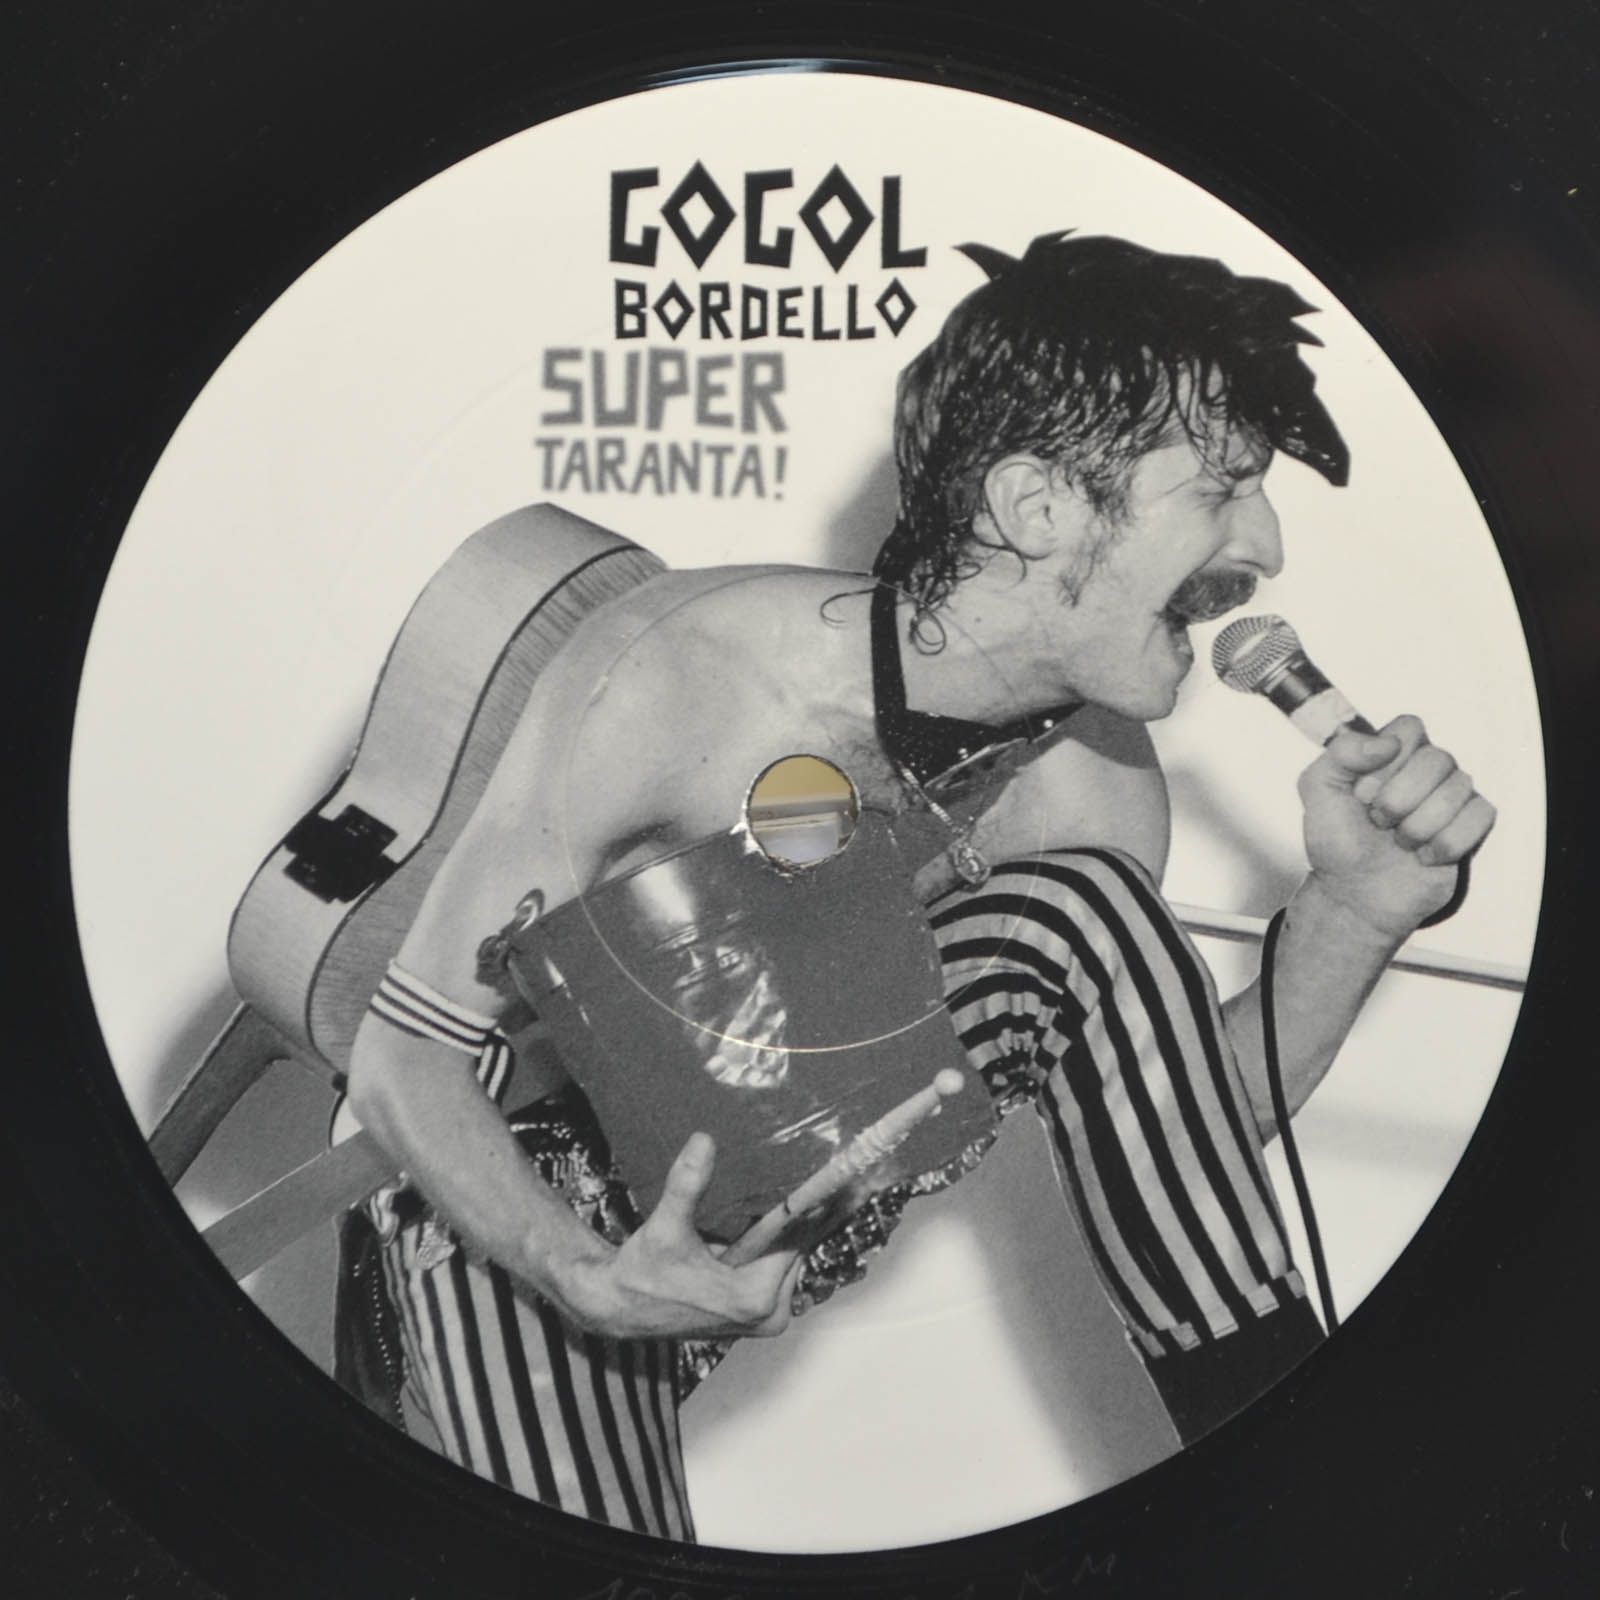 Gogol Bordello — Super Taranta! (2LP), 2007